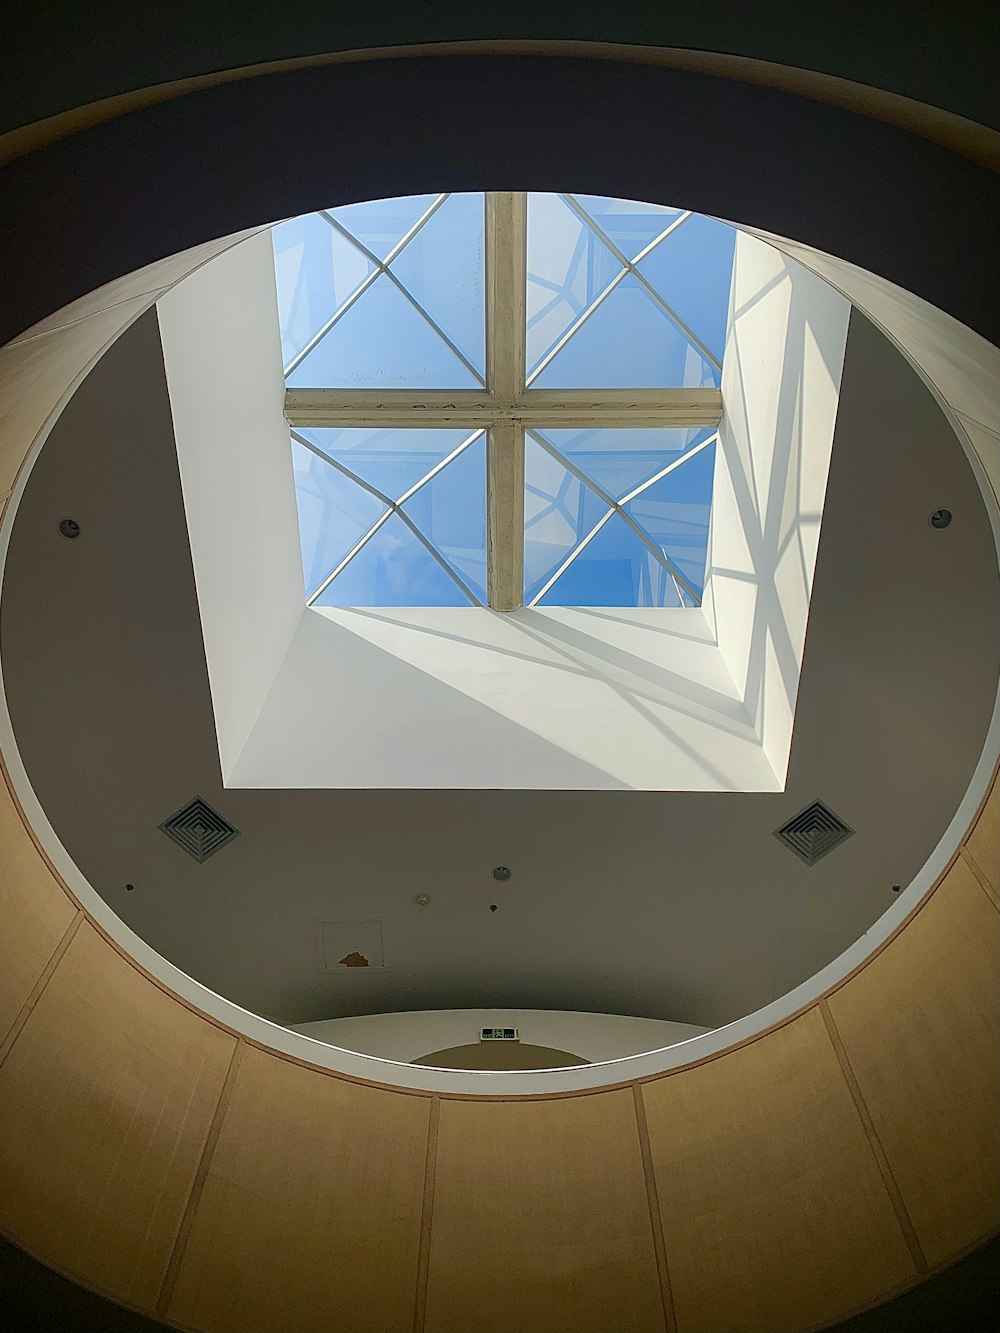 Blick auf ein rundes Fenster in einem Gebäude